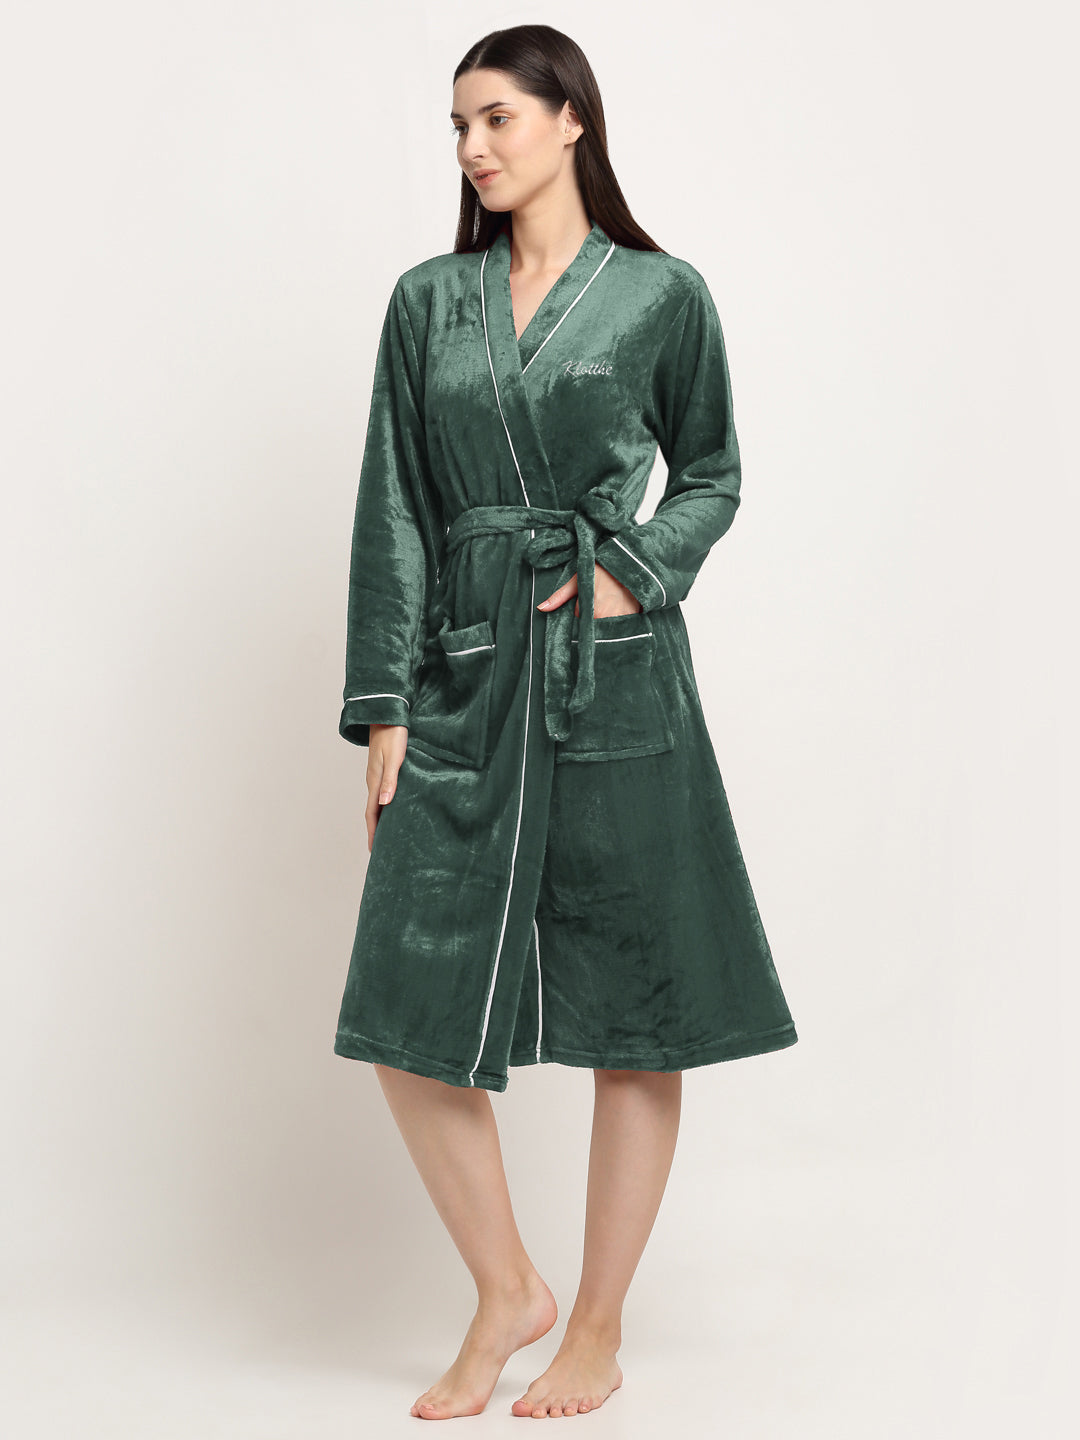 Klotthe Women Green Solid Wool Bath Robe With Belt